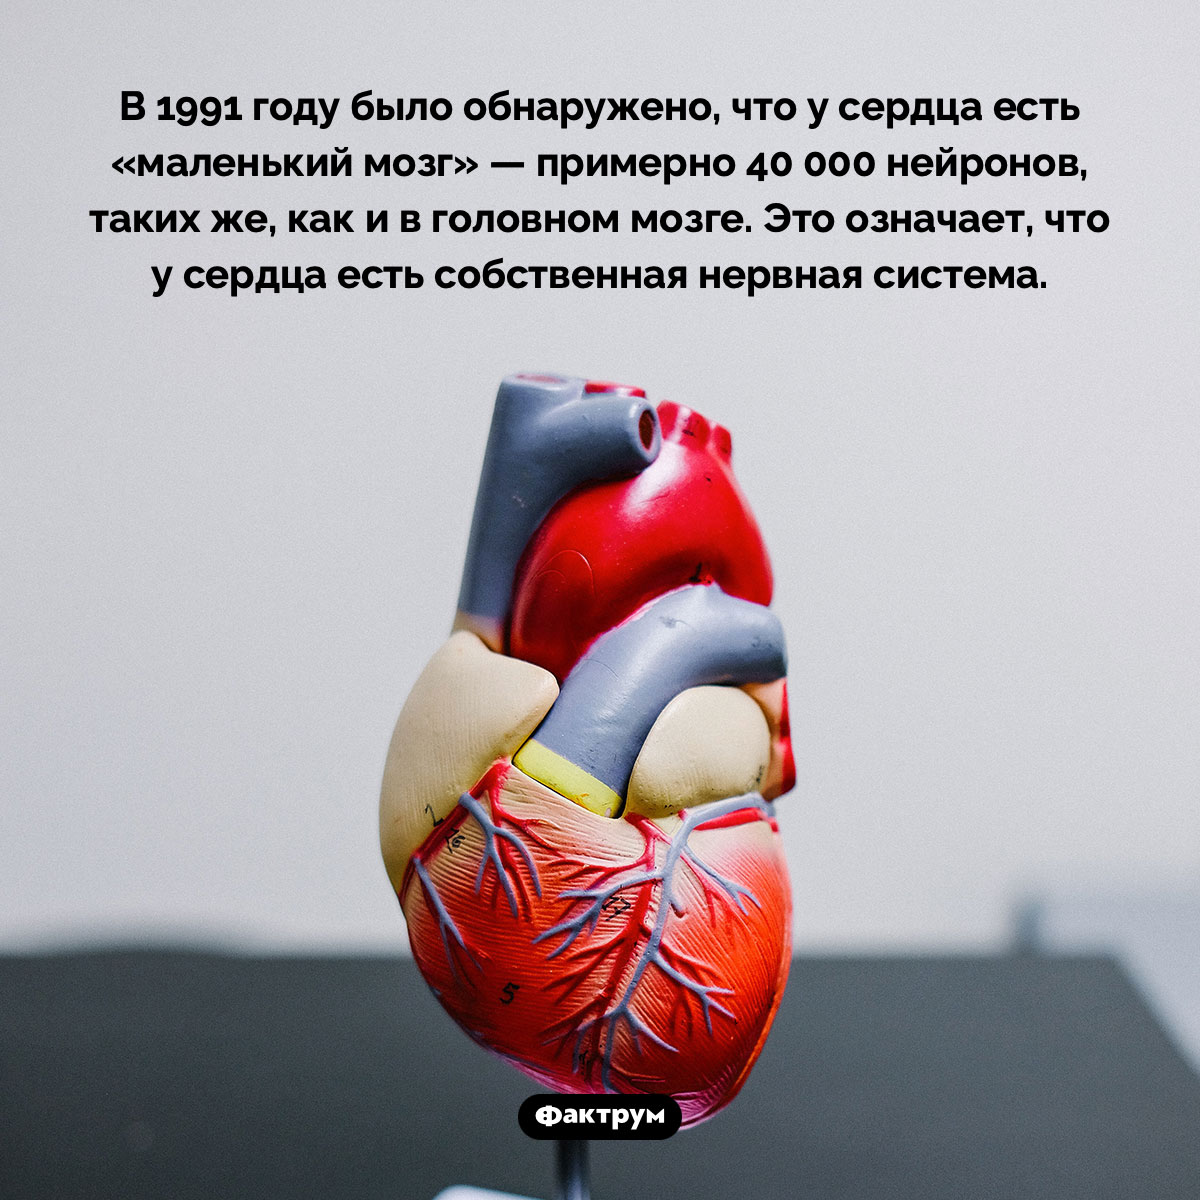 У сердца есть собственный «мозг». В 1991 году было обнаружено, что у сердца есть «маленький мозг» — примерно 40 000 нейронов, таких же, как и в головном мозге. Это означает, что у сердца есть собственная нервная система.